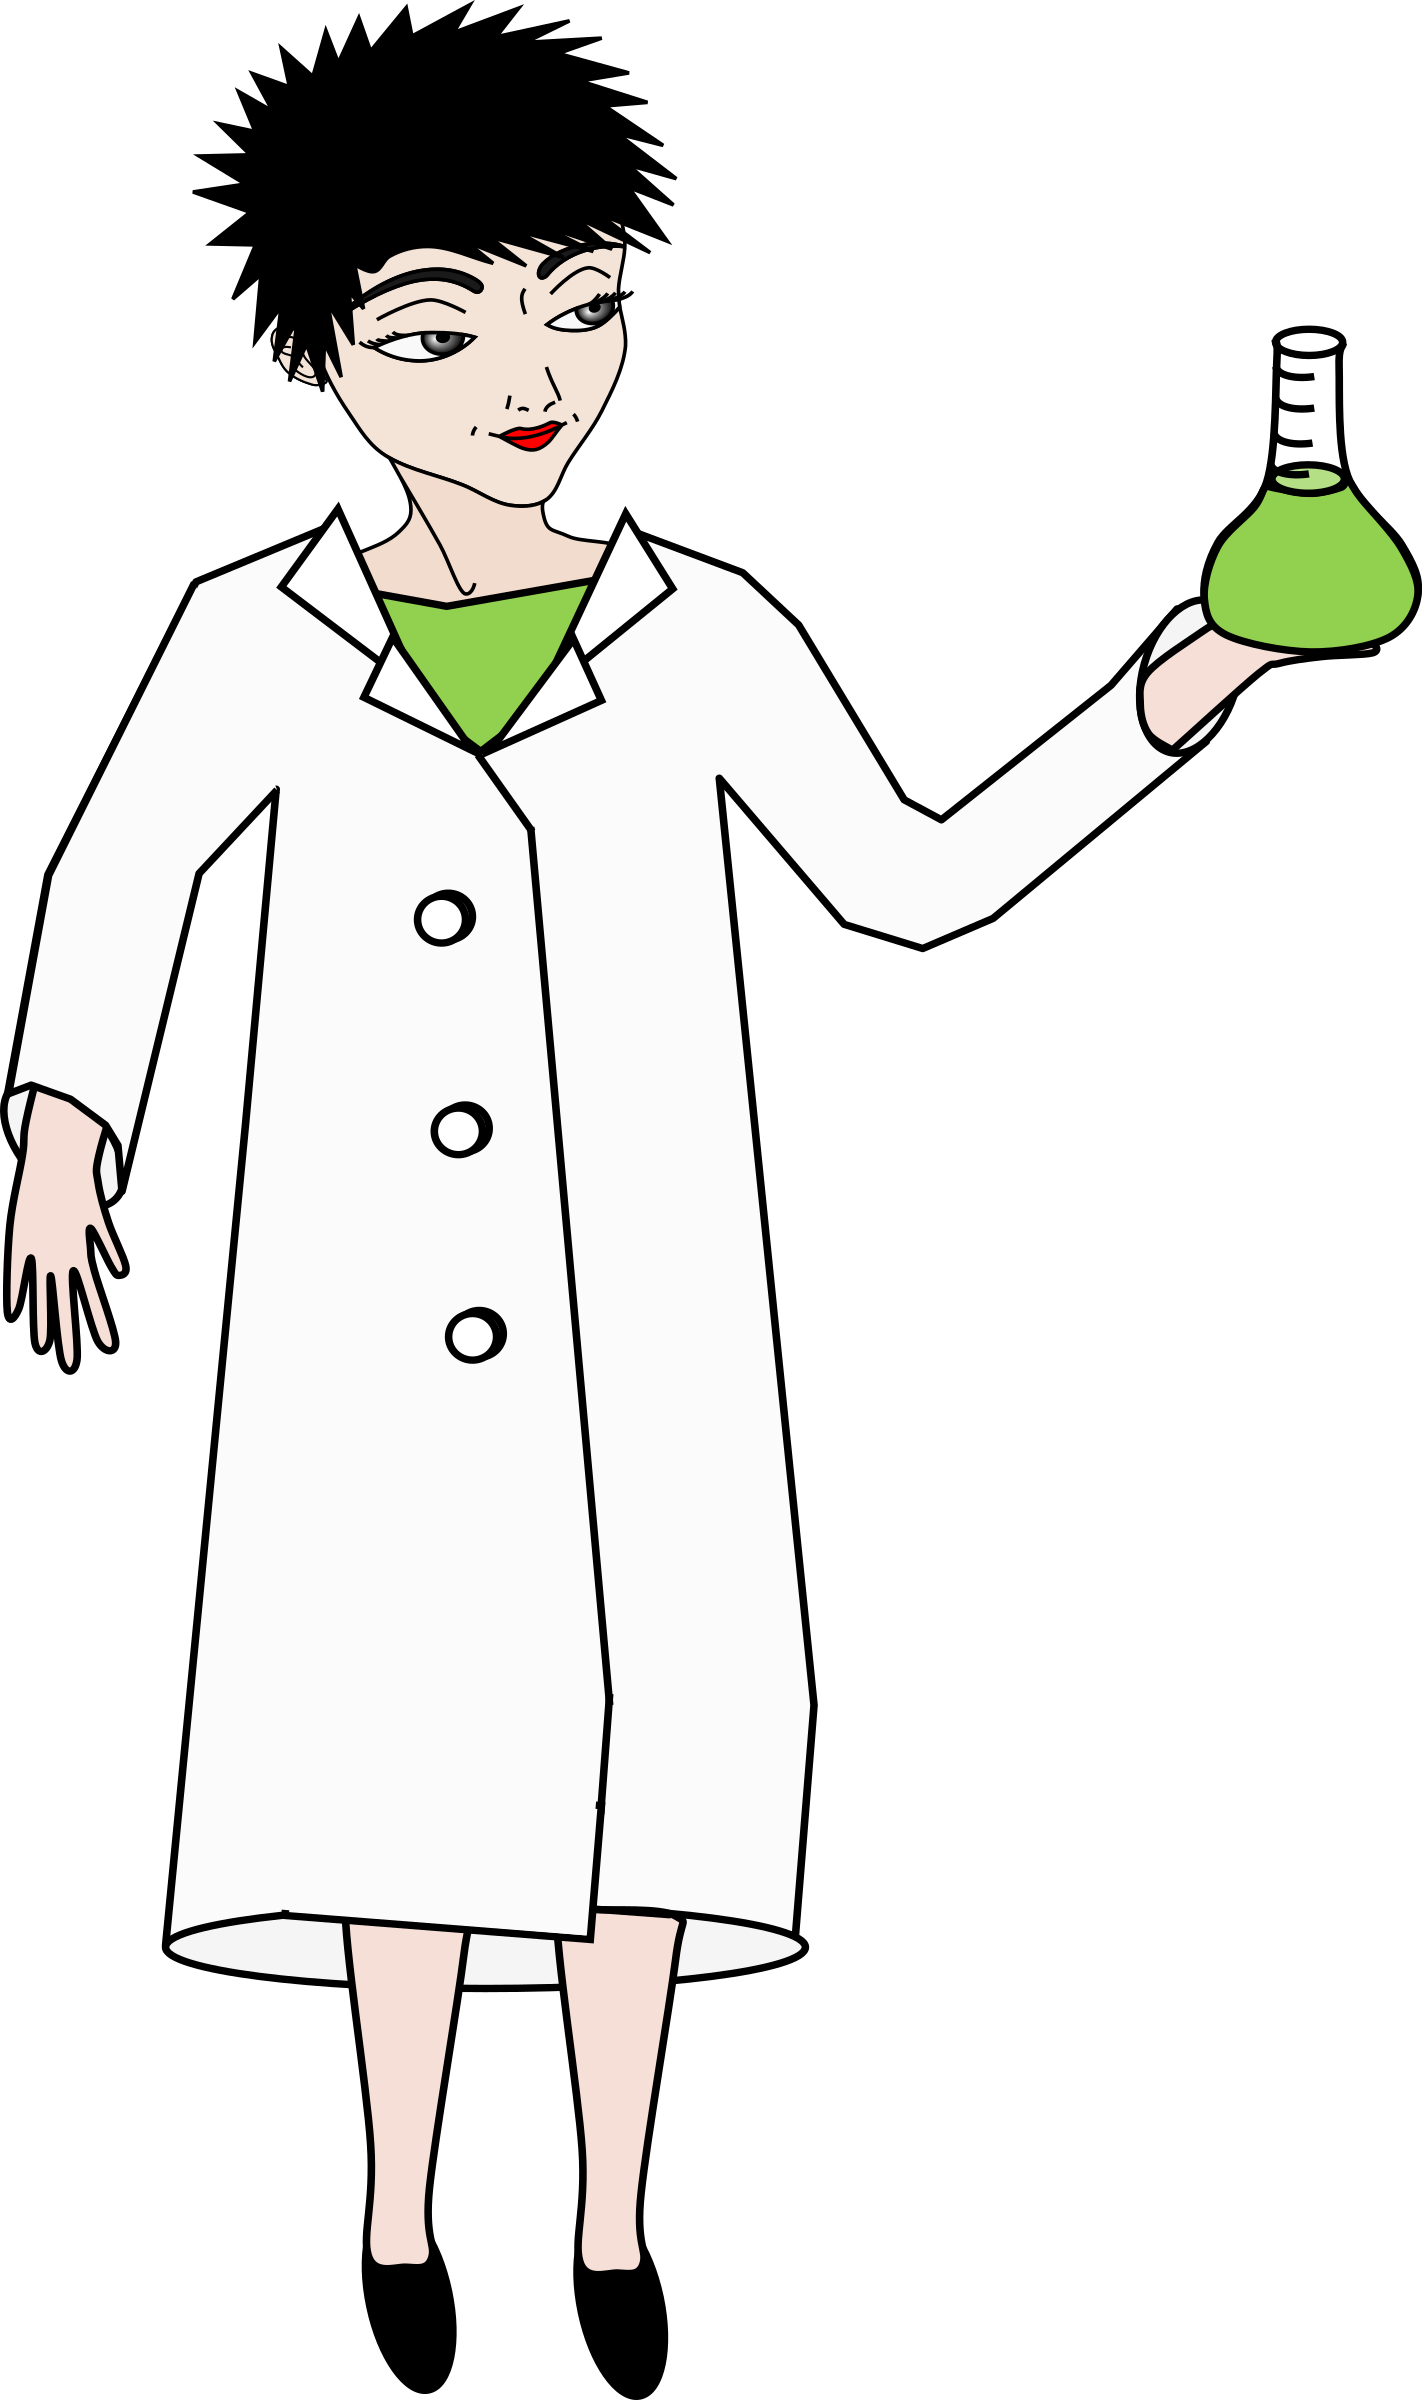 scientist clipart uniform